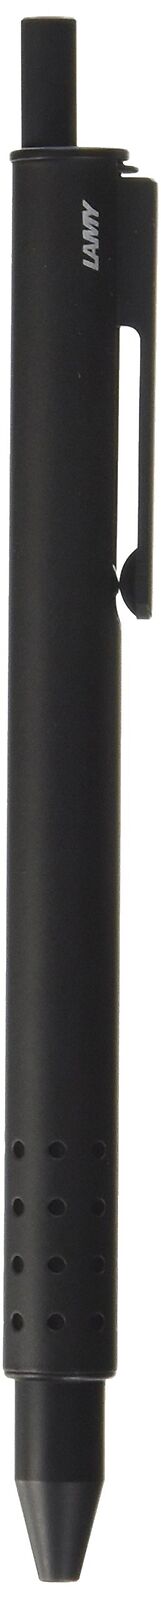 Lamy Swift Rollerball Pen, Matte Black (L331) 4001146